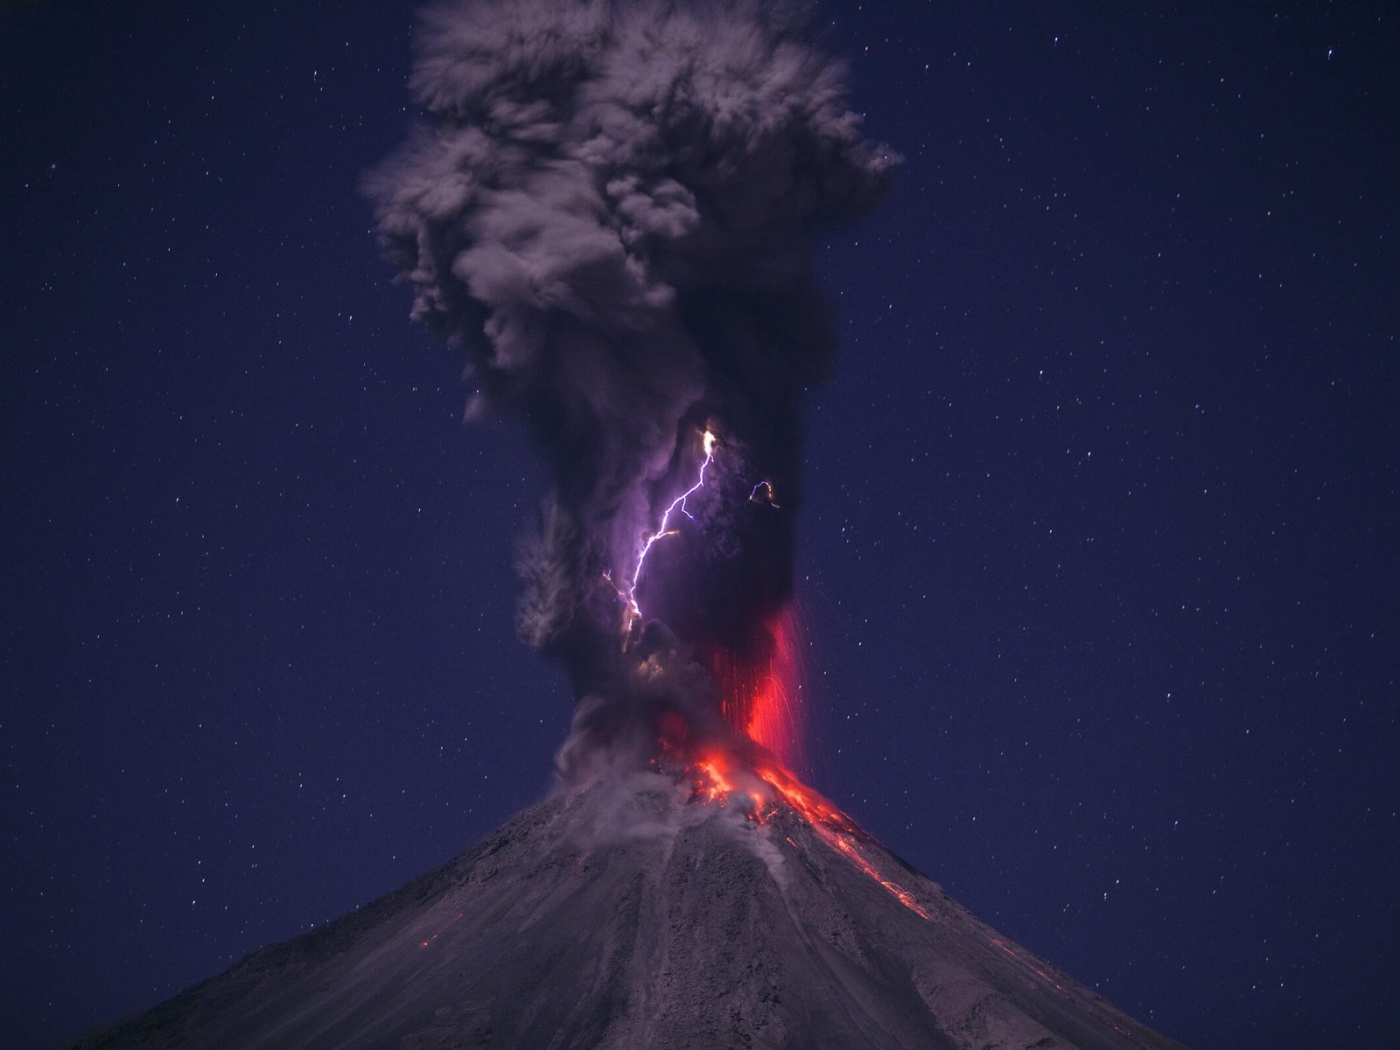 Выброс пепла из вулкана на фоне звездного неба